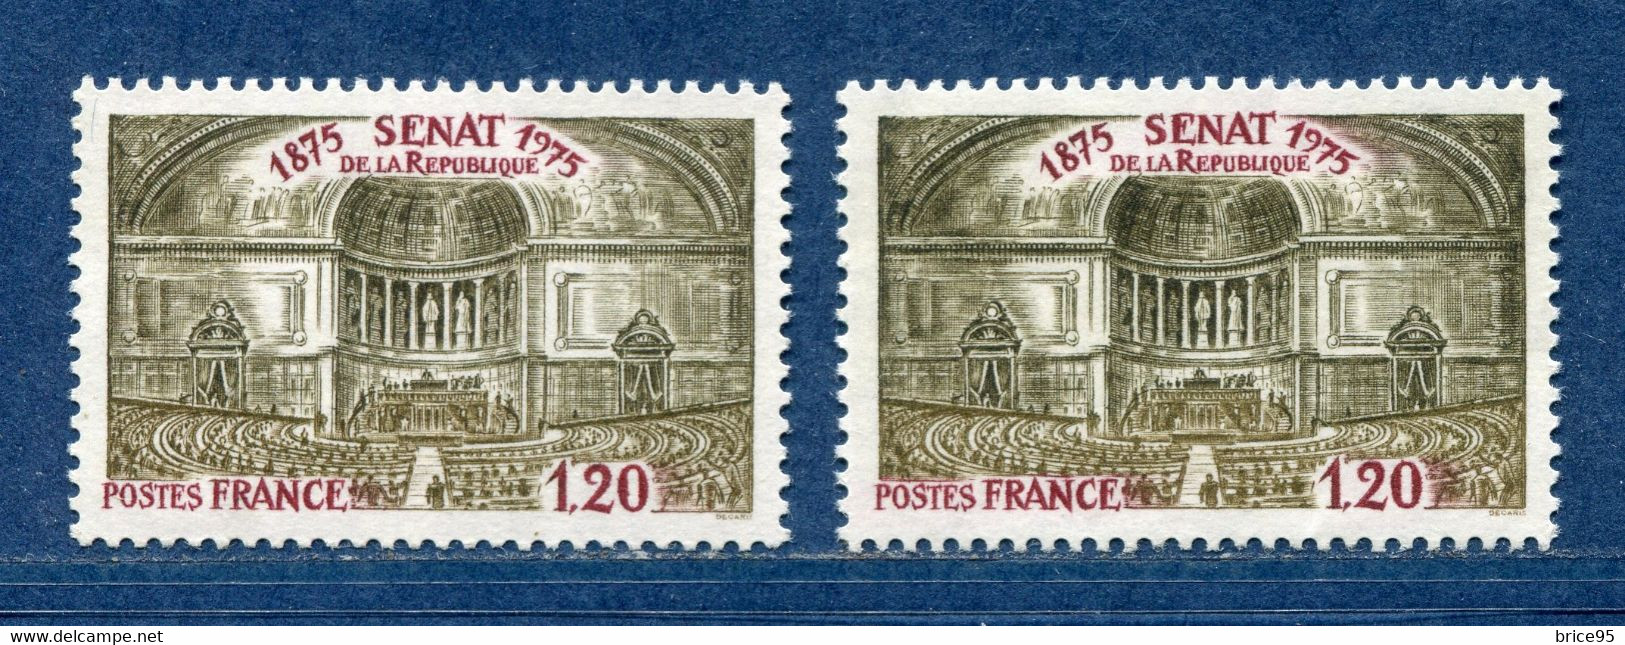 ⭐ France - Variété - YT N° 1843 - Couleurs - Pétouille - Neuf Sans Charnière - 1975 ⭐ - Ongebruikt